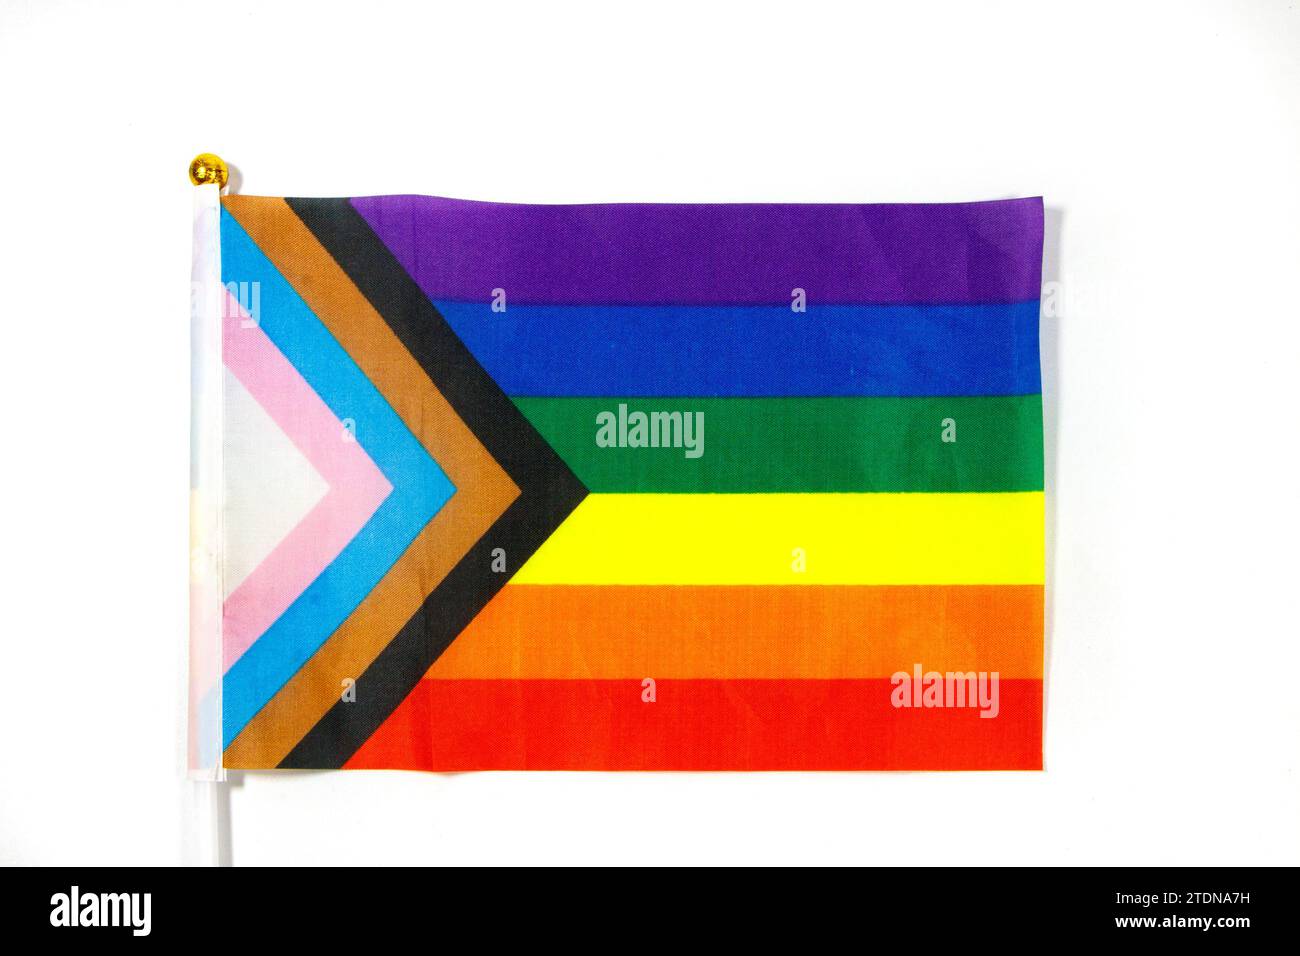 drapeau gay pride isolé sur fond blanc de studio arc-en-ciel lgbtq Banque D'Images